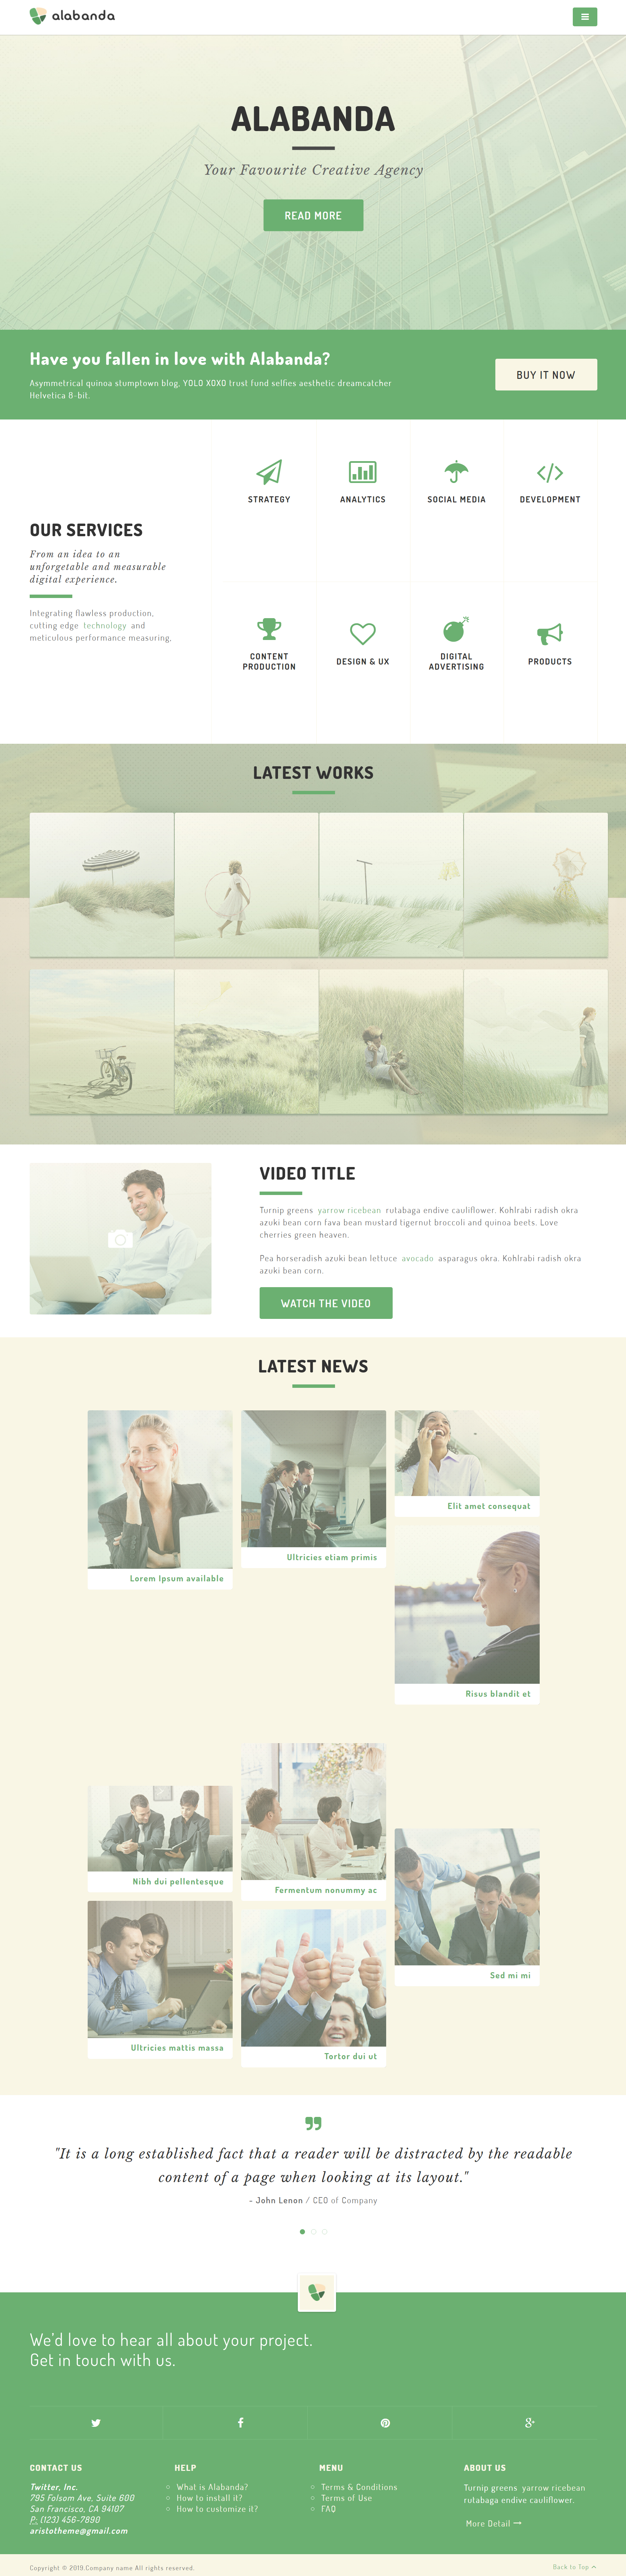 绿色简洁风格响应式数字营销机构企业网站模板